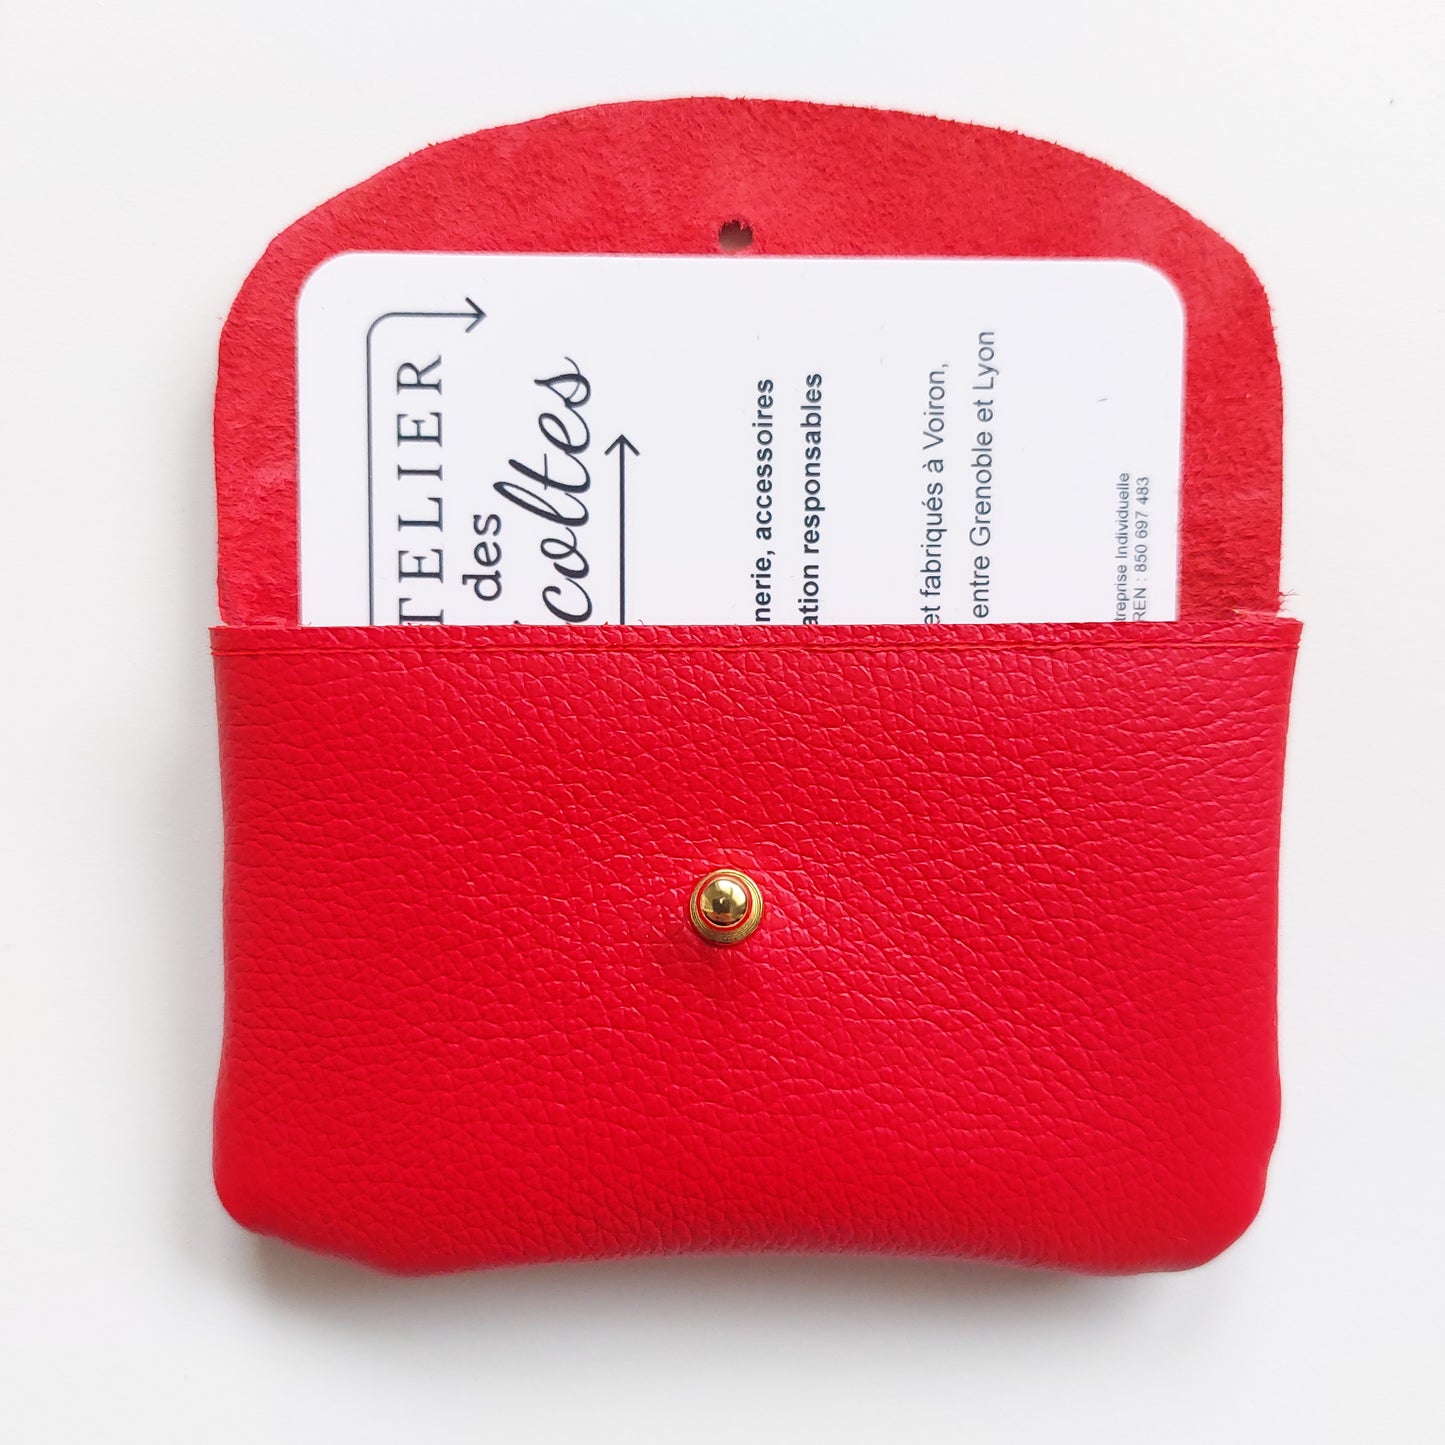 Porte-cartes / Porte-monnaie bicolore en cuir upcyclé rouge (10.5 x 6.5 cm)